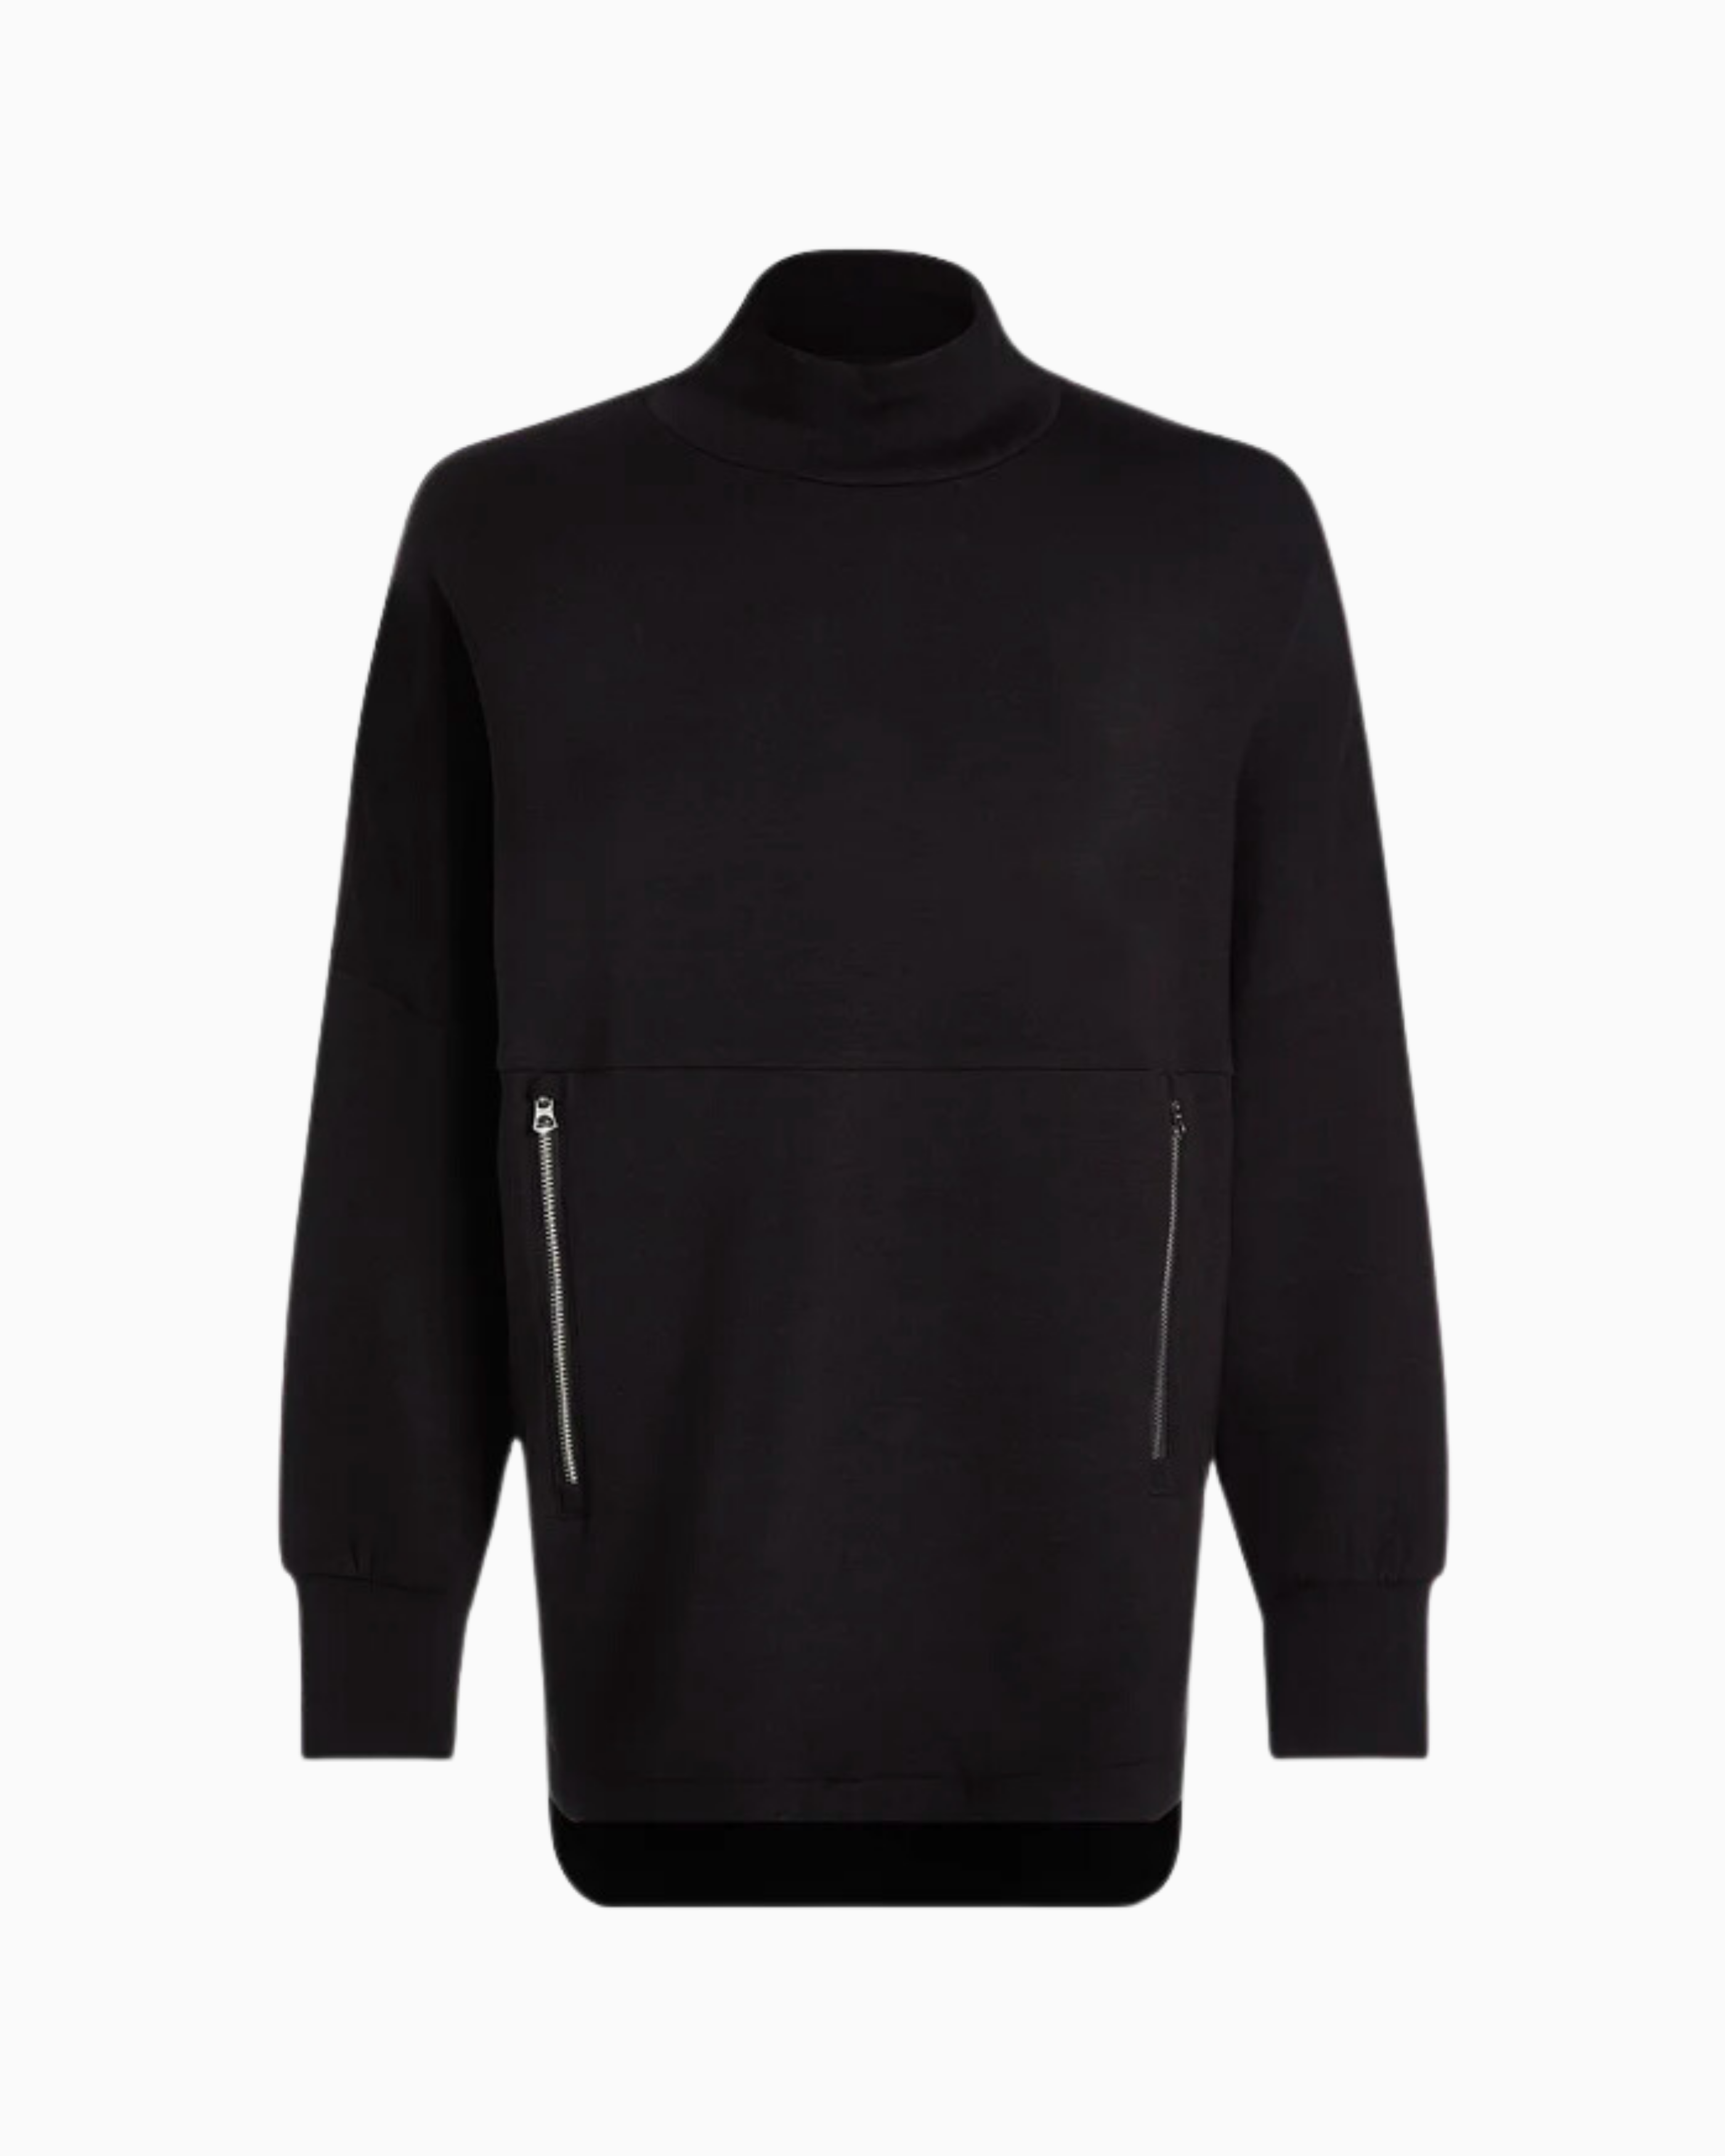 Varley Bay Sweatshirt in Black